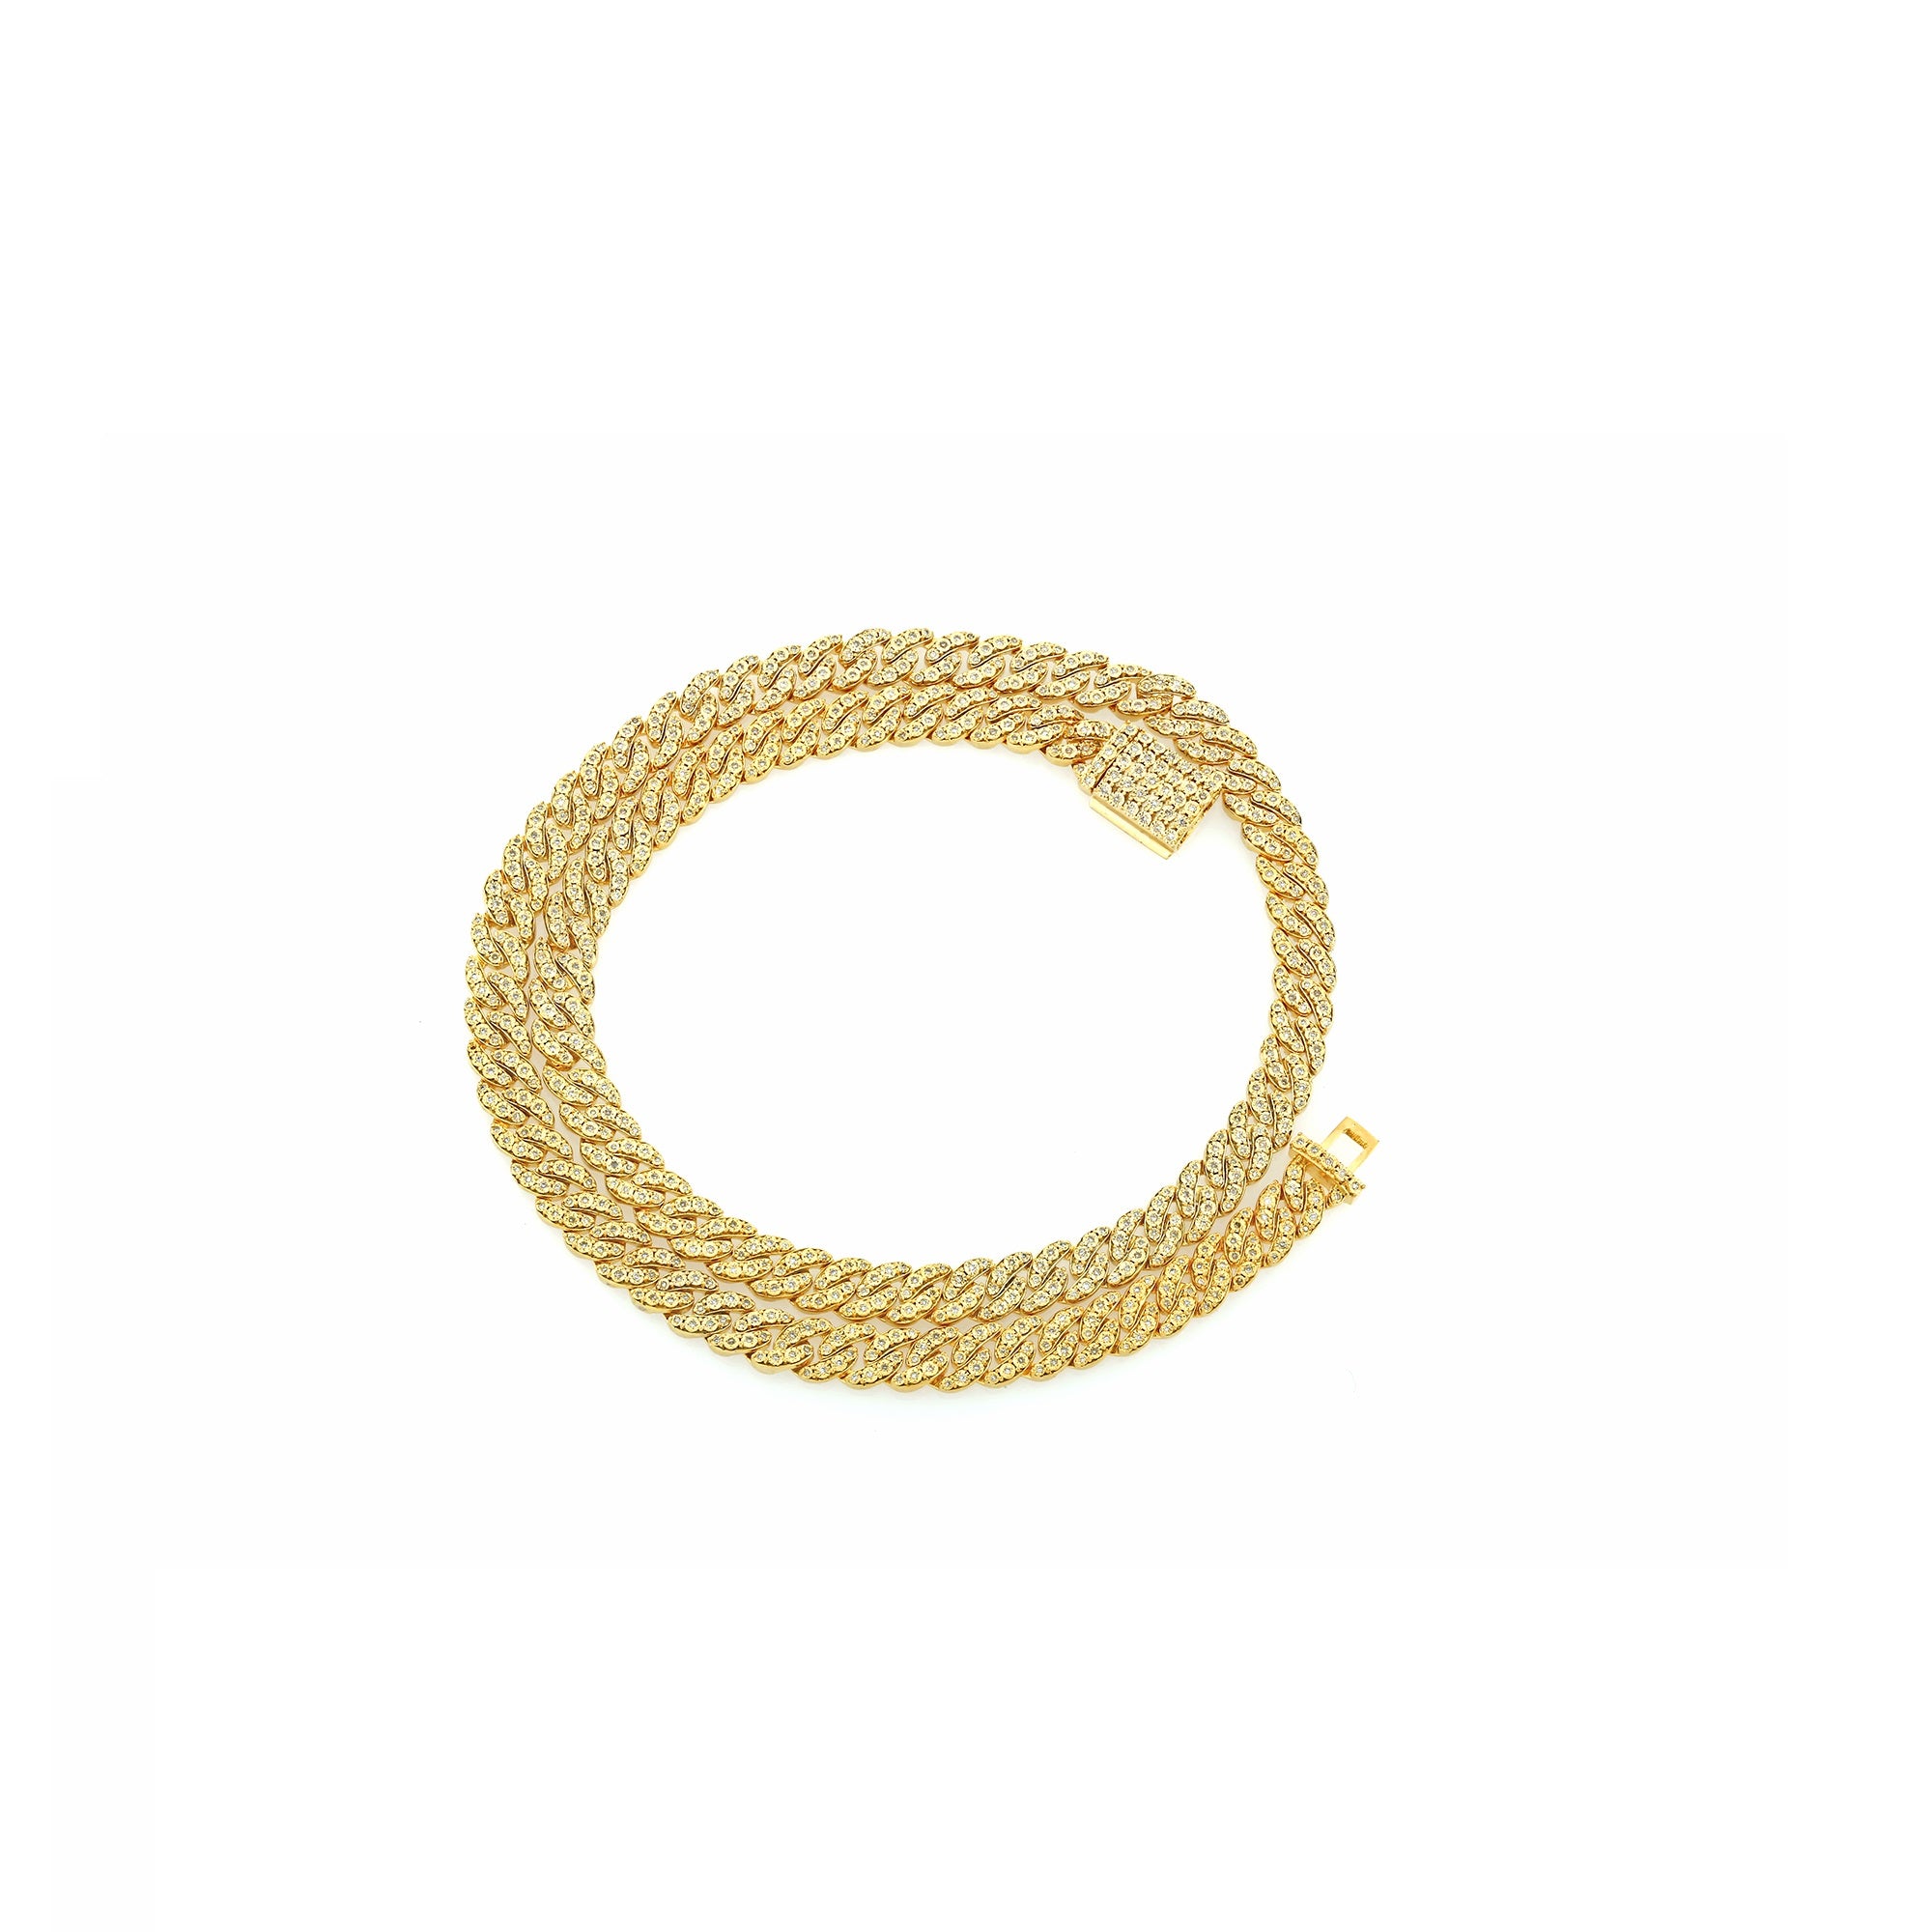 8mm Yellow Gold Diamond Cuban Chain by Rafaela jewelry